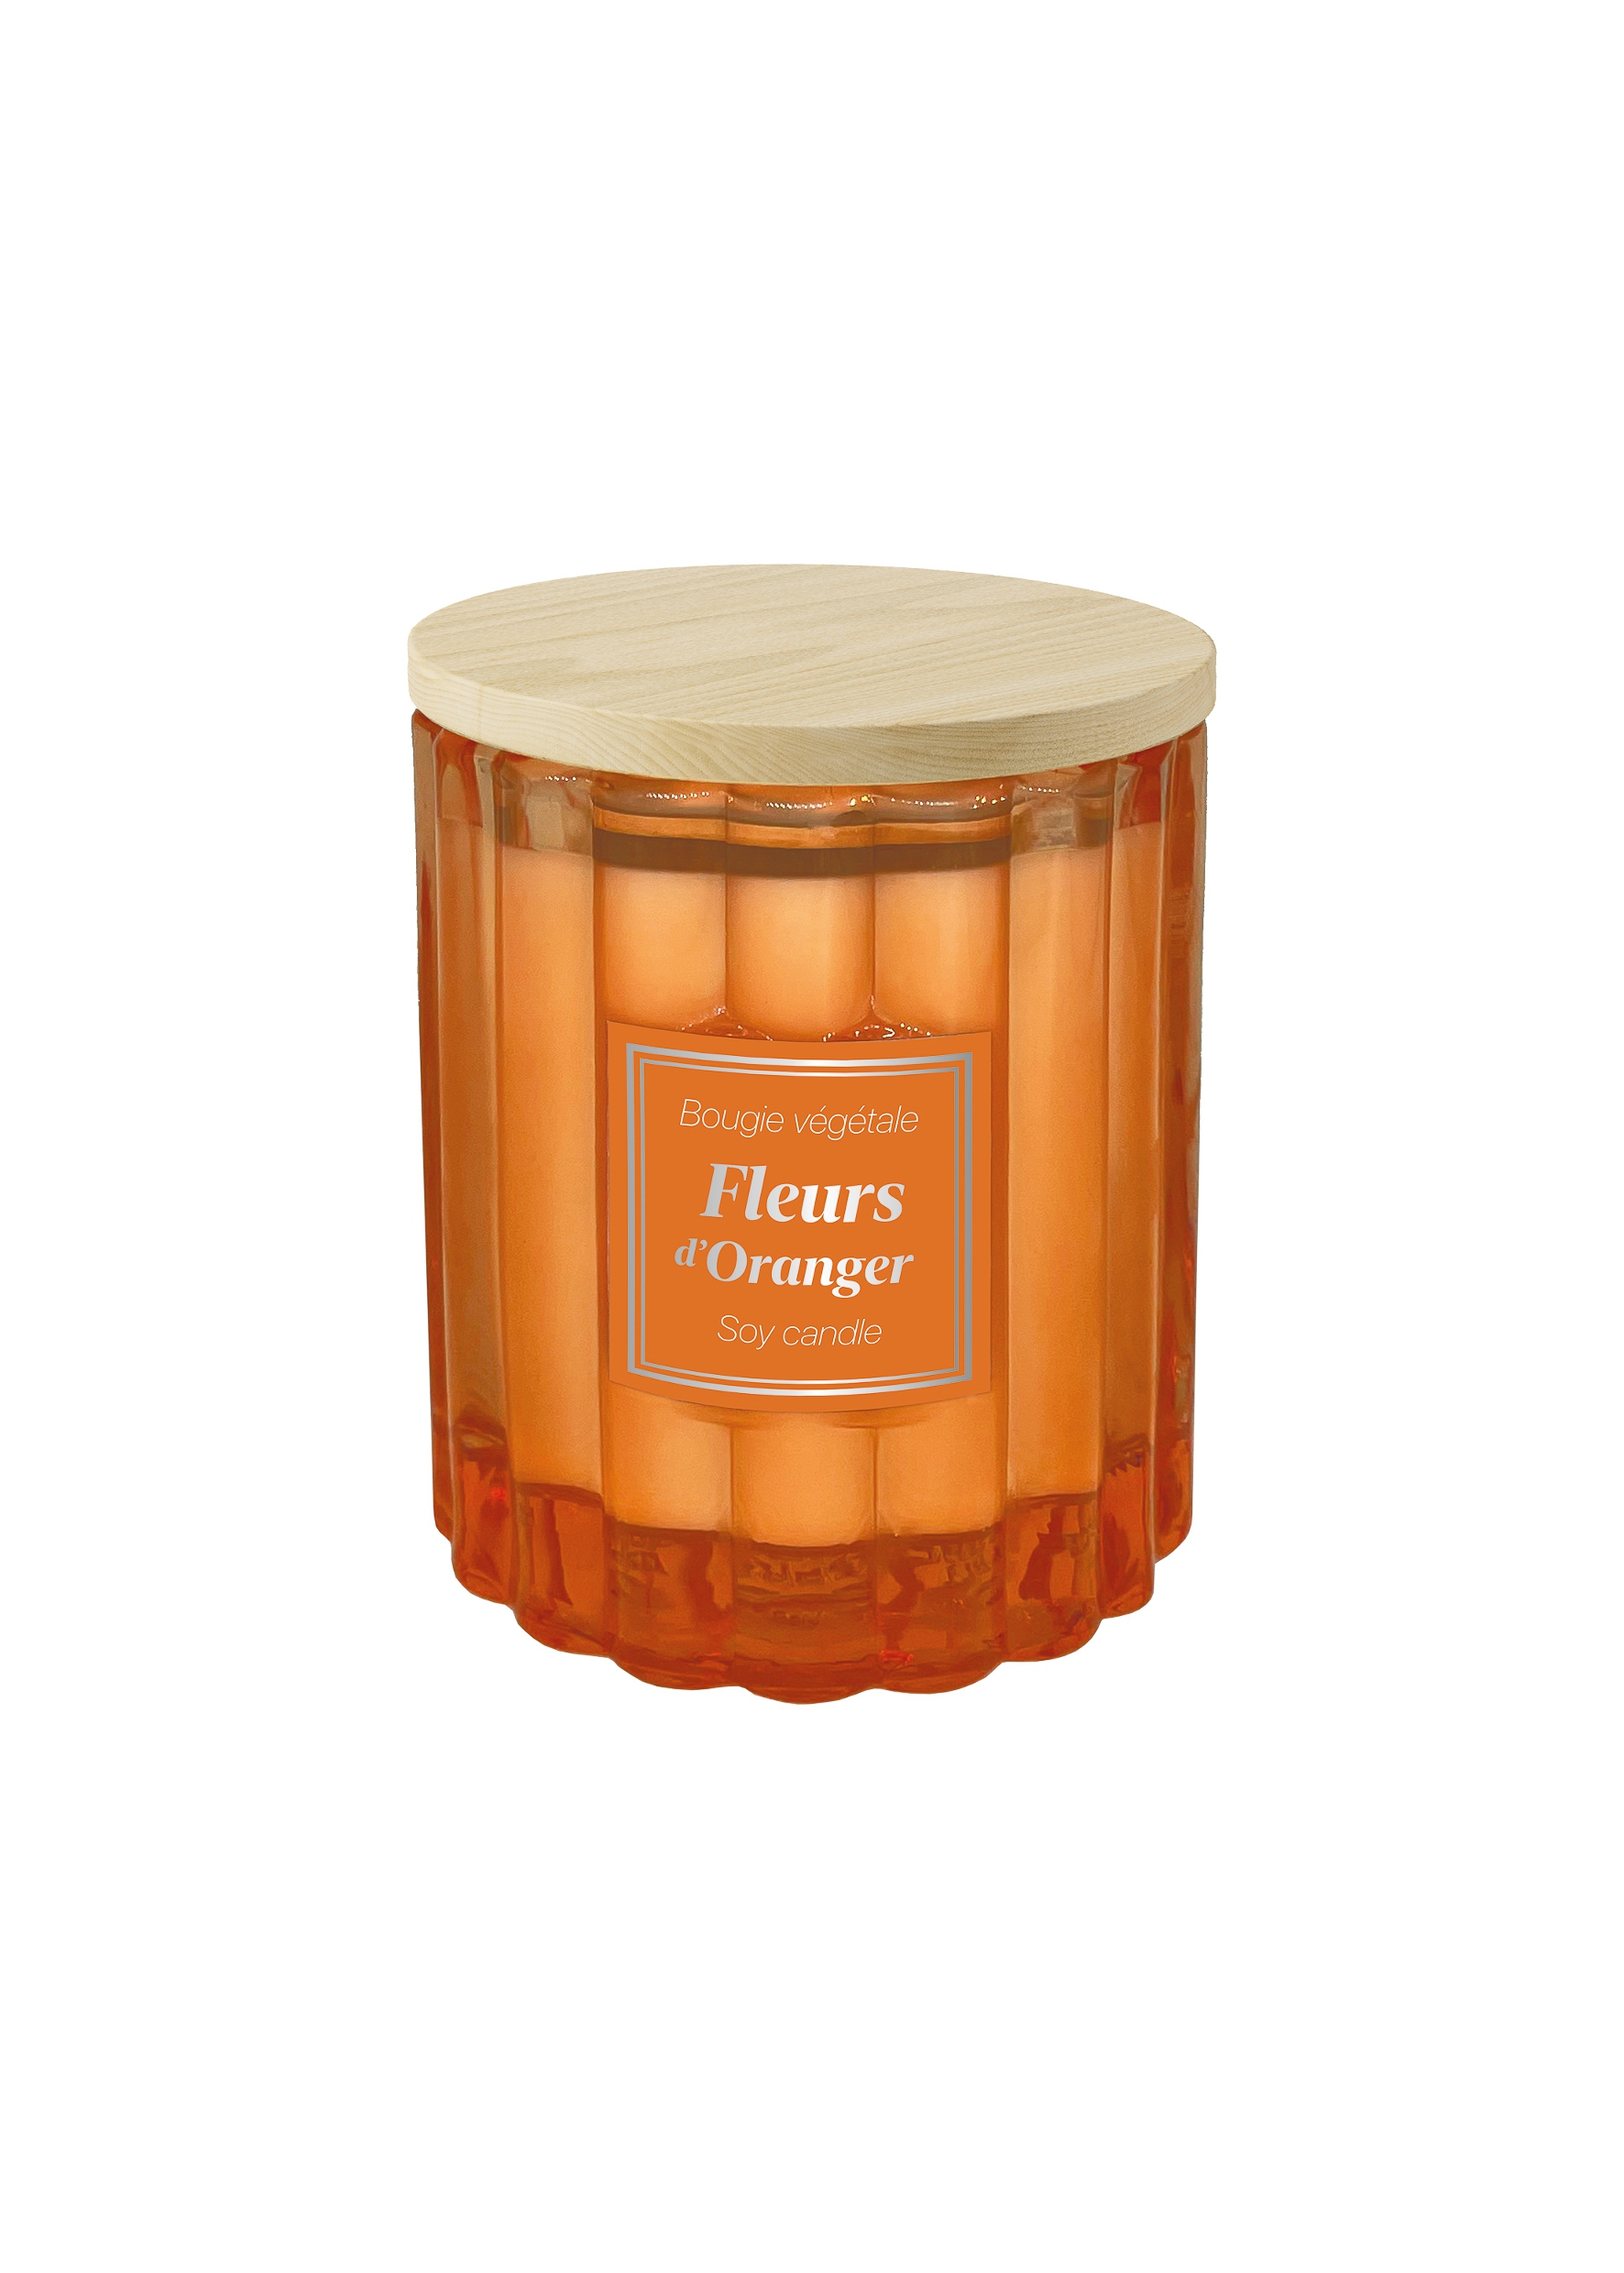 Fleurs d’Oranger Bougie Végétale - 190g